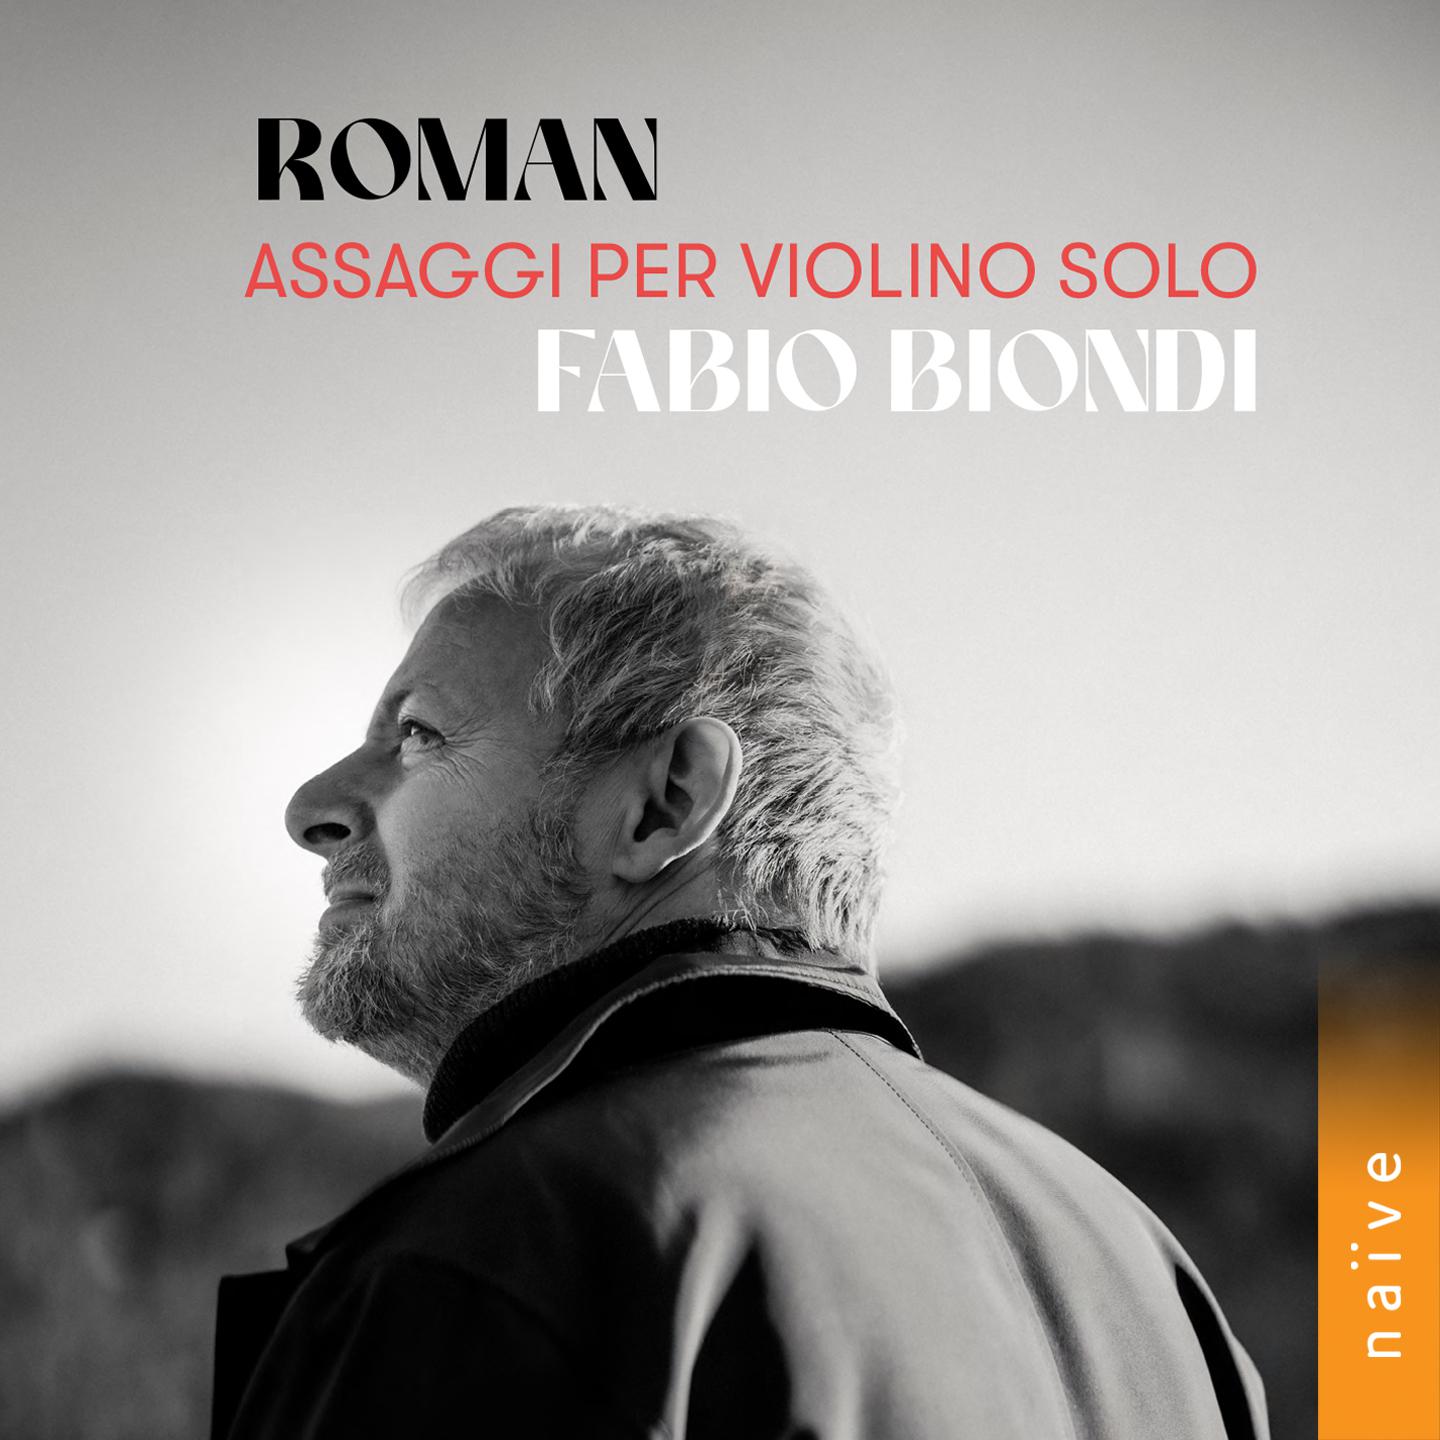 Fabio Biondi - Assaggio per violino solo in A Major, BeRI 301:II.